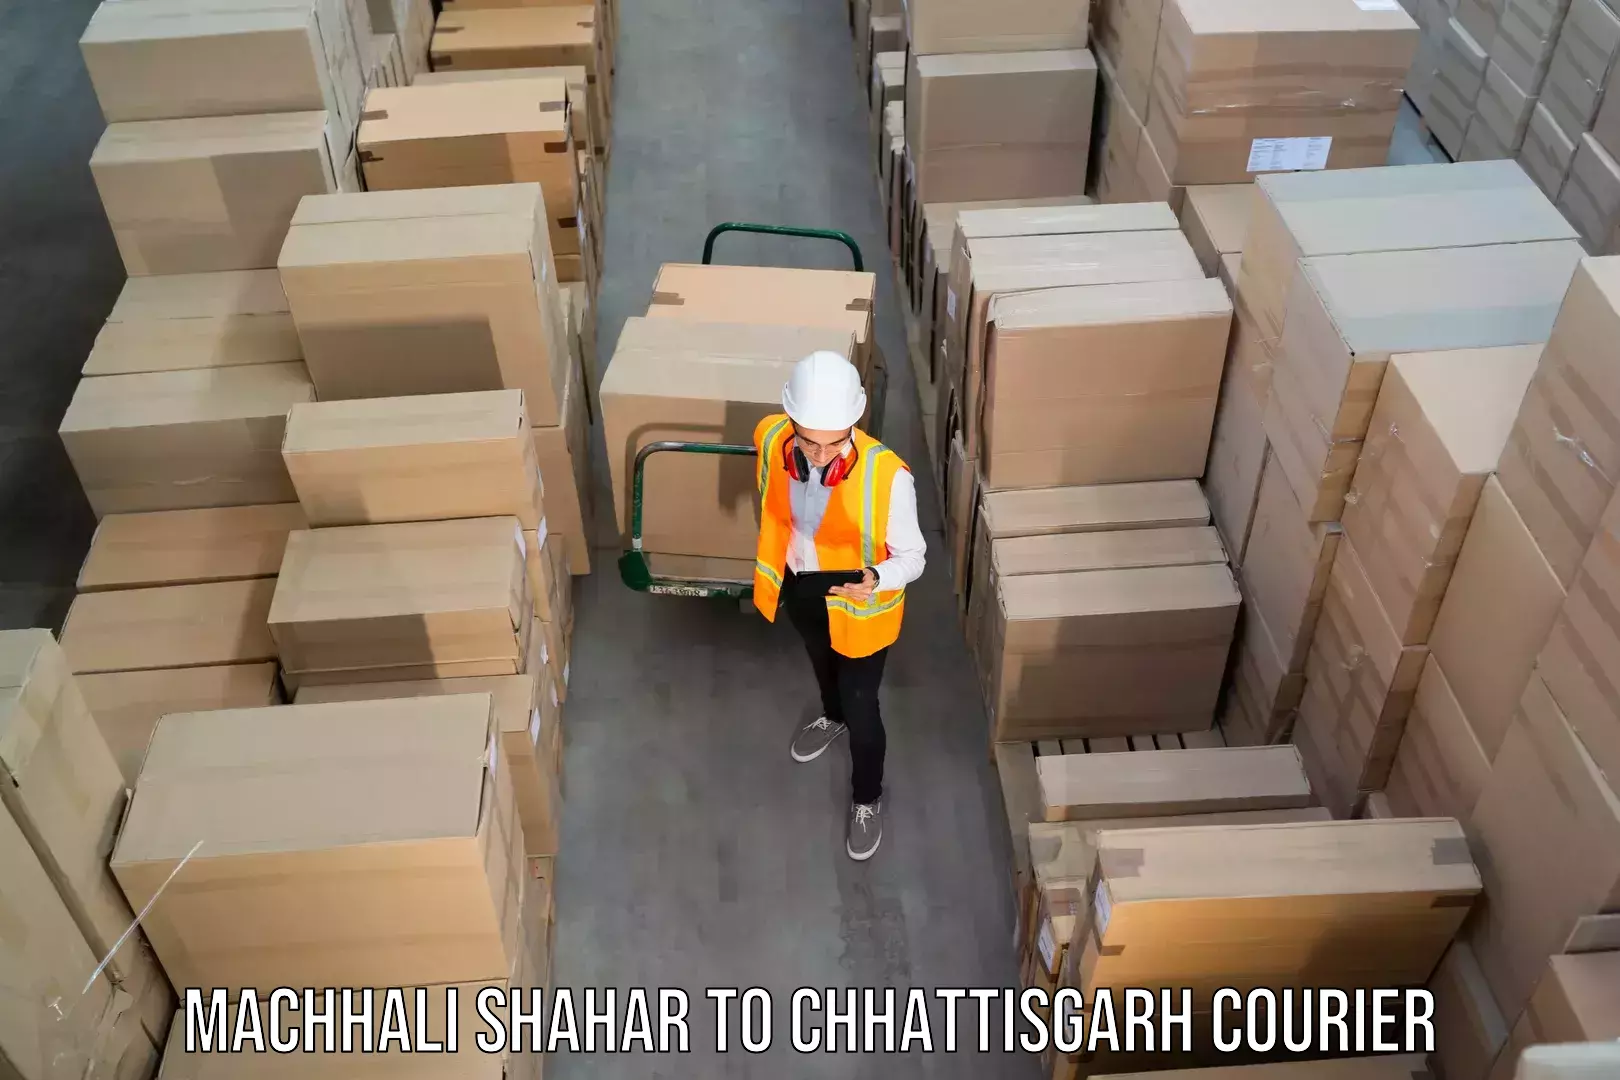 Enhanced tracking features in Machhali Shahar to NIT Raipur